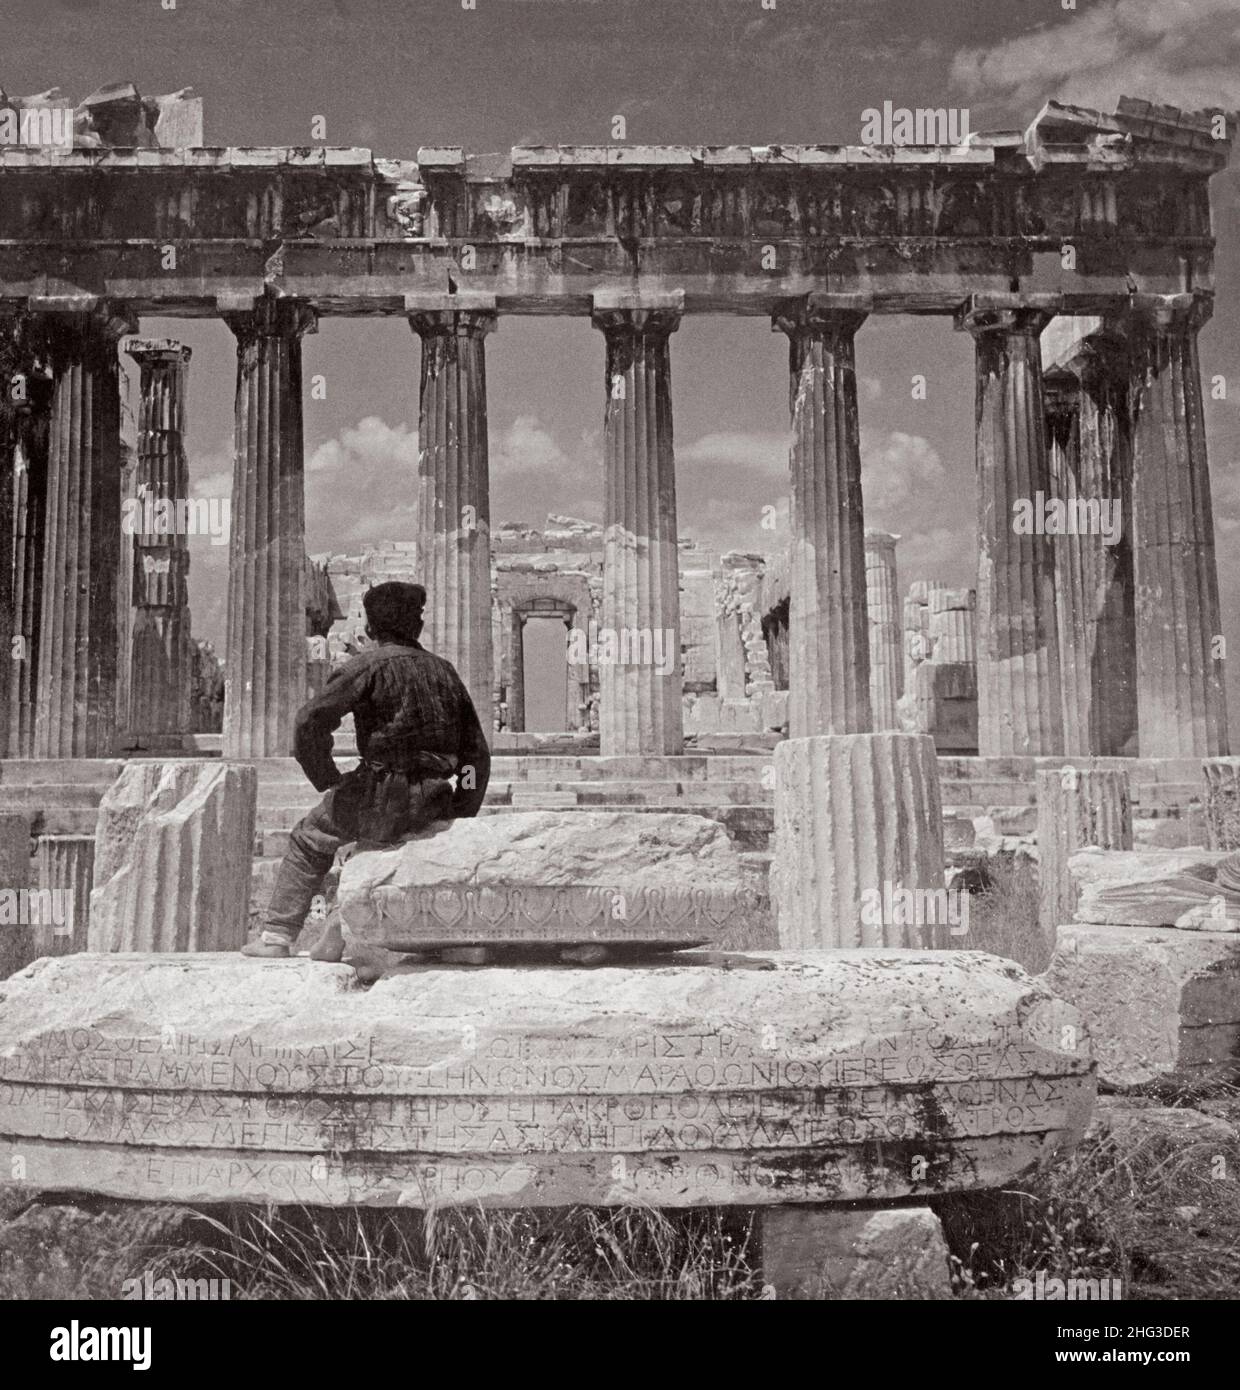 Photo d'époque de l'extrémité est du Parthénon, Acropole, Athènes, Grèce.1900s Banque D'Images